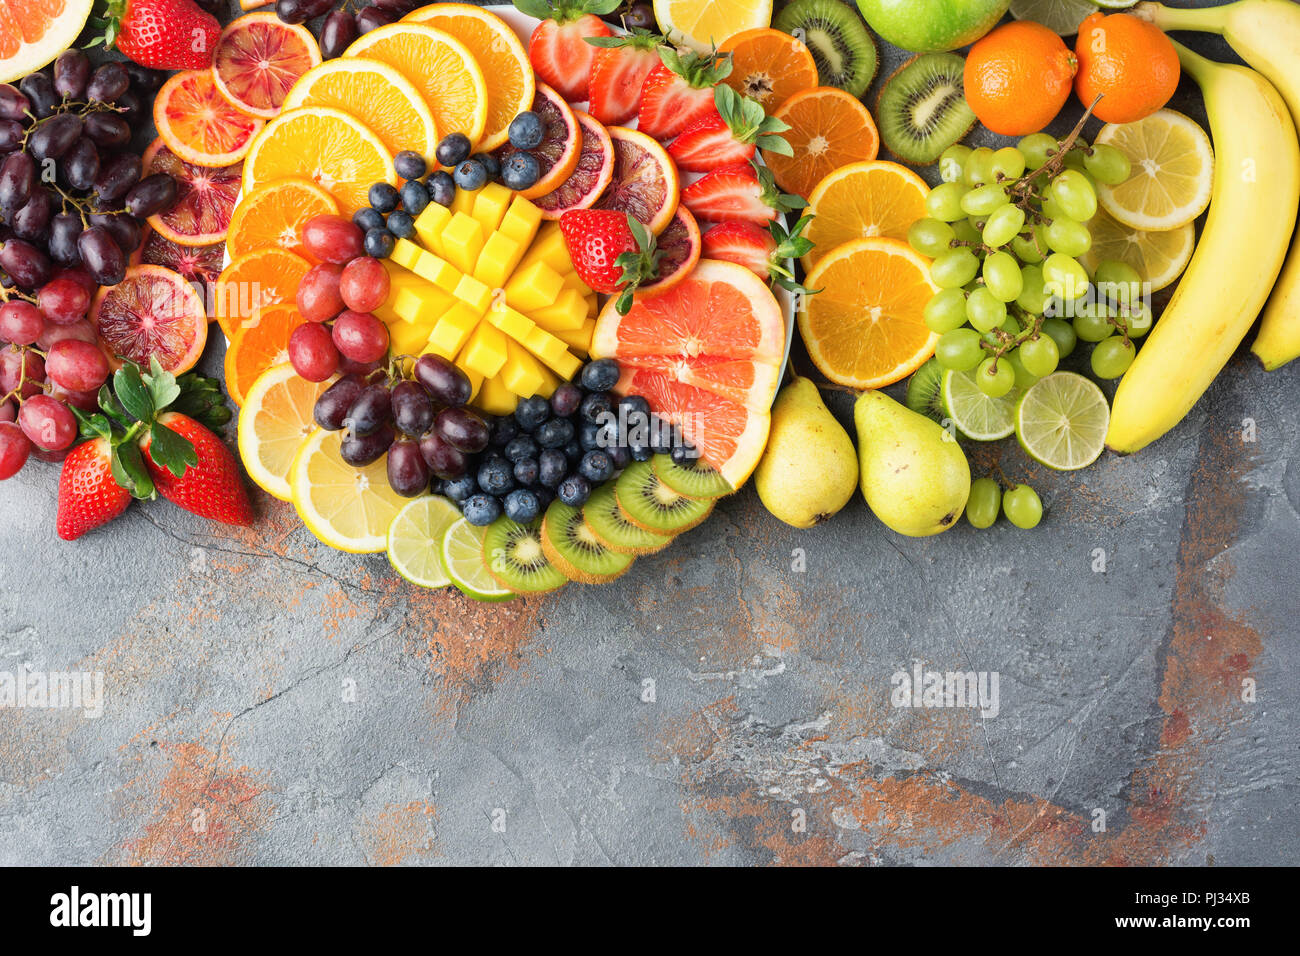 Les fruits sains en arrière-plan des couleurs arc-en-ciel oranges pommes poires raisins fraises kiwis mangues sur la table en béton gris-brun, vue du dessus, copiez l'espace, selective focus Banque D'Images